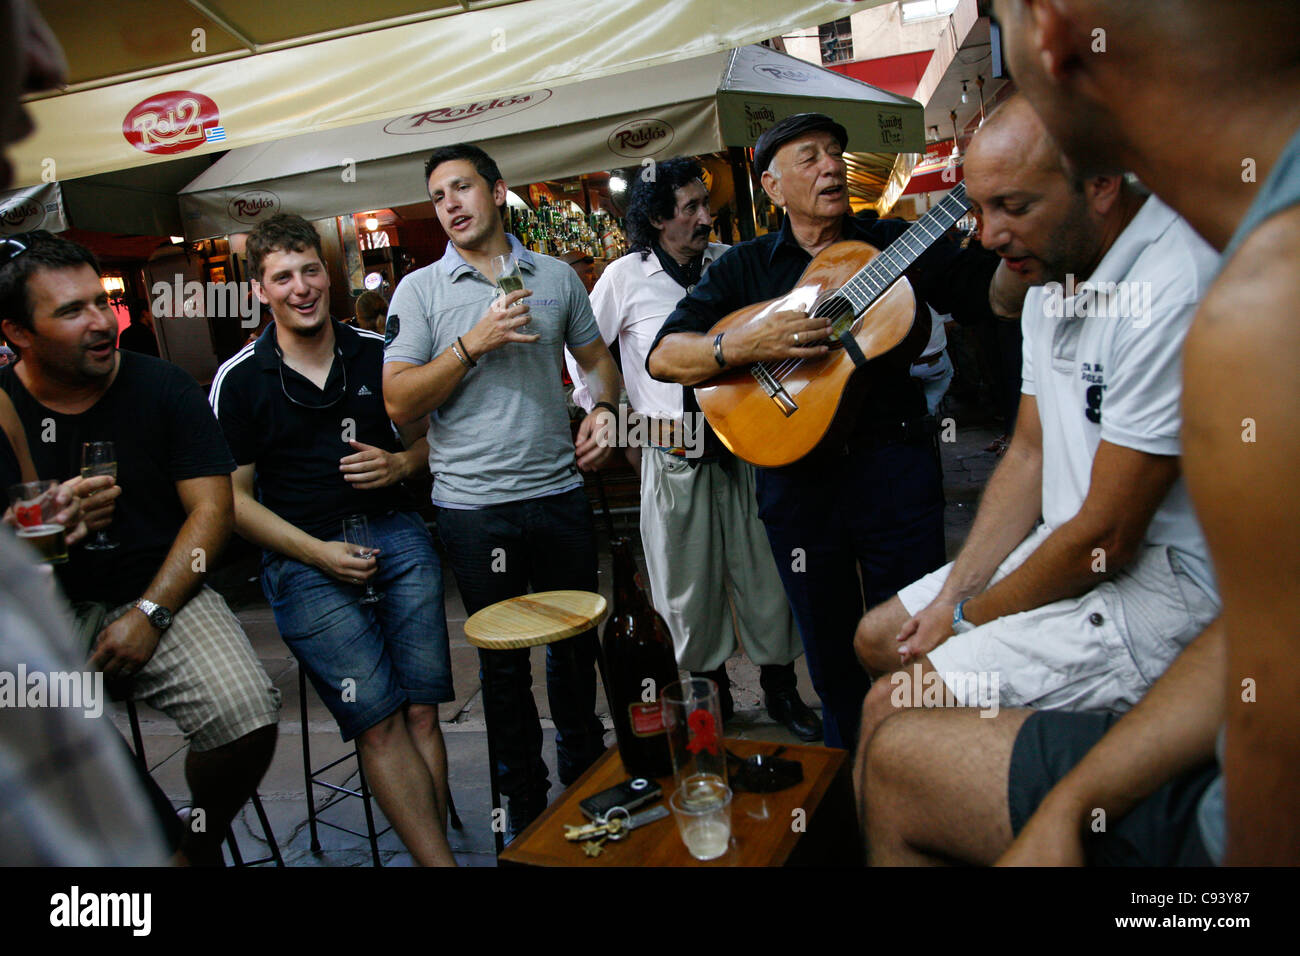 People at the Roldos Bar in the Mercado del Puerto, Montevideo, Uruguay. Stock Photo